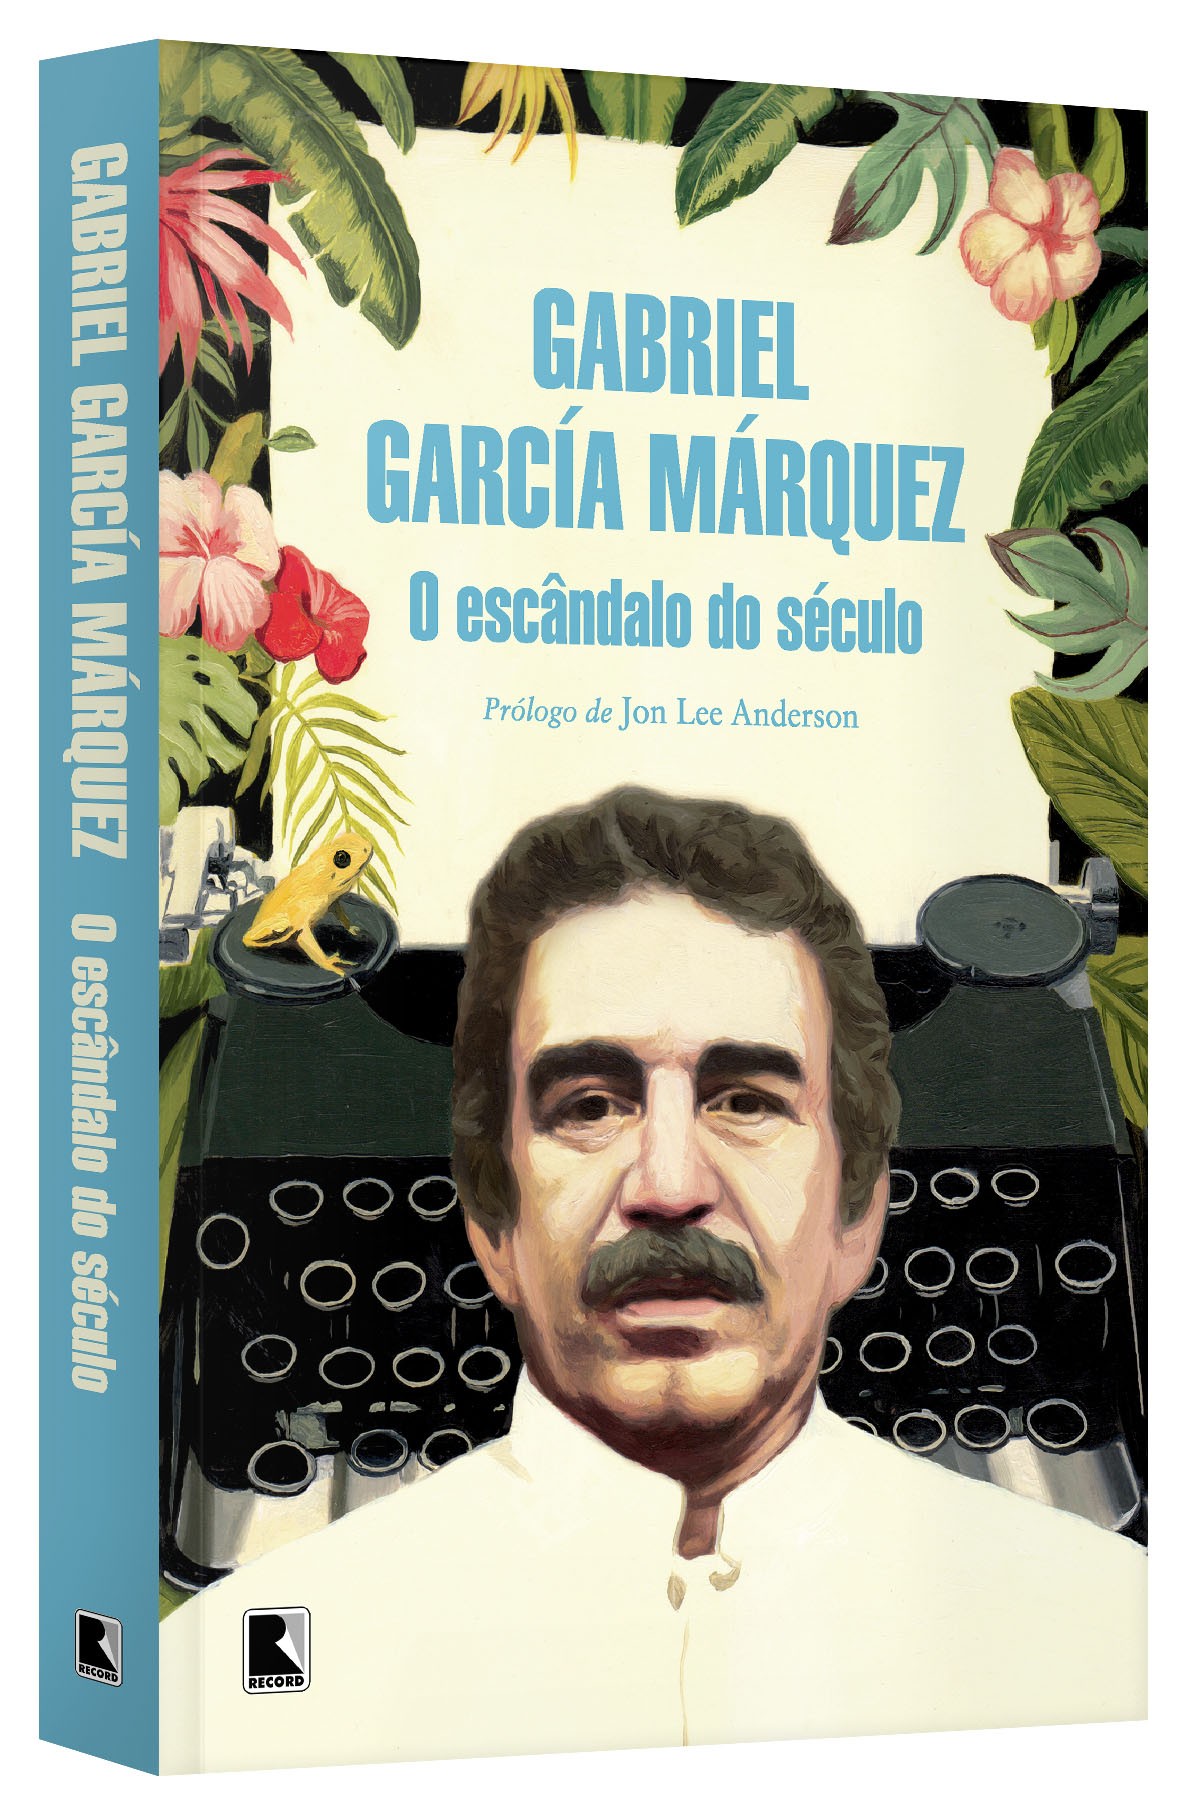 O escândalo do século, de Gabriel García Márquez (Editora Record, 350 páginas, R$ 59,90) (Foto: Divulgação)